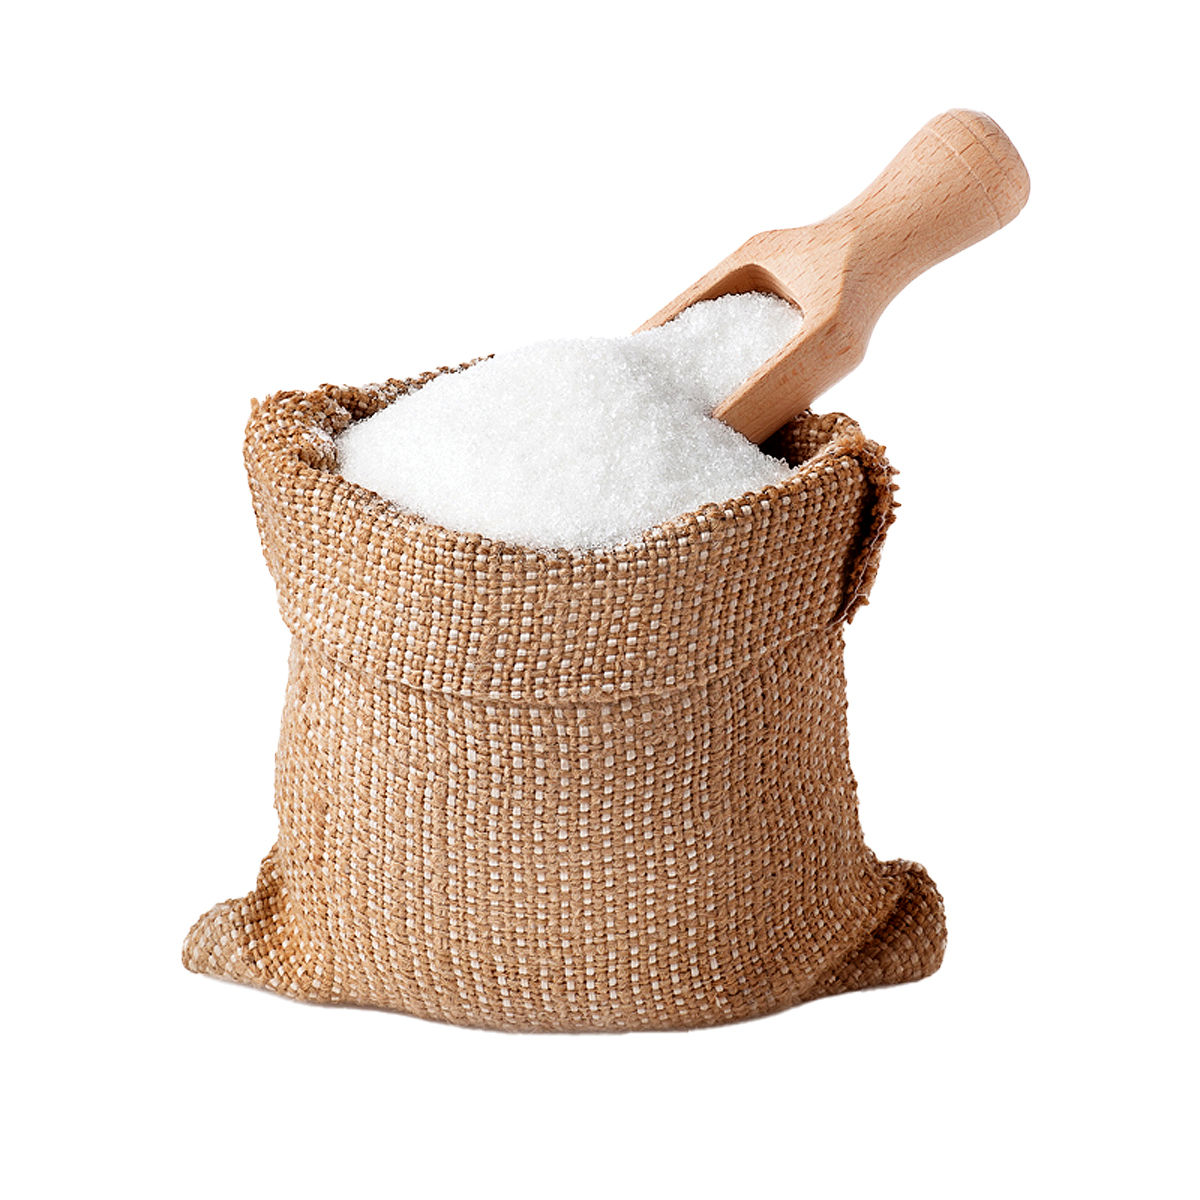 کام تلخ تولیدکنندگان درپی واردات شکر